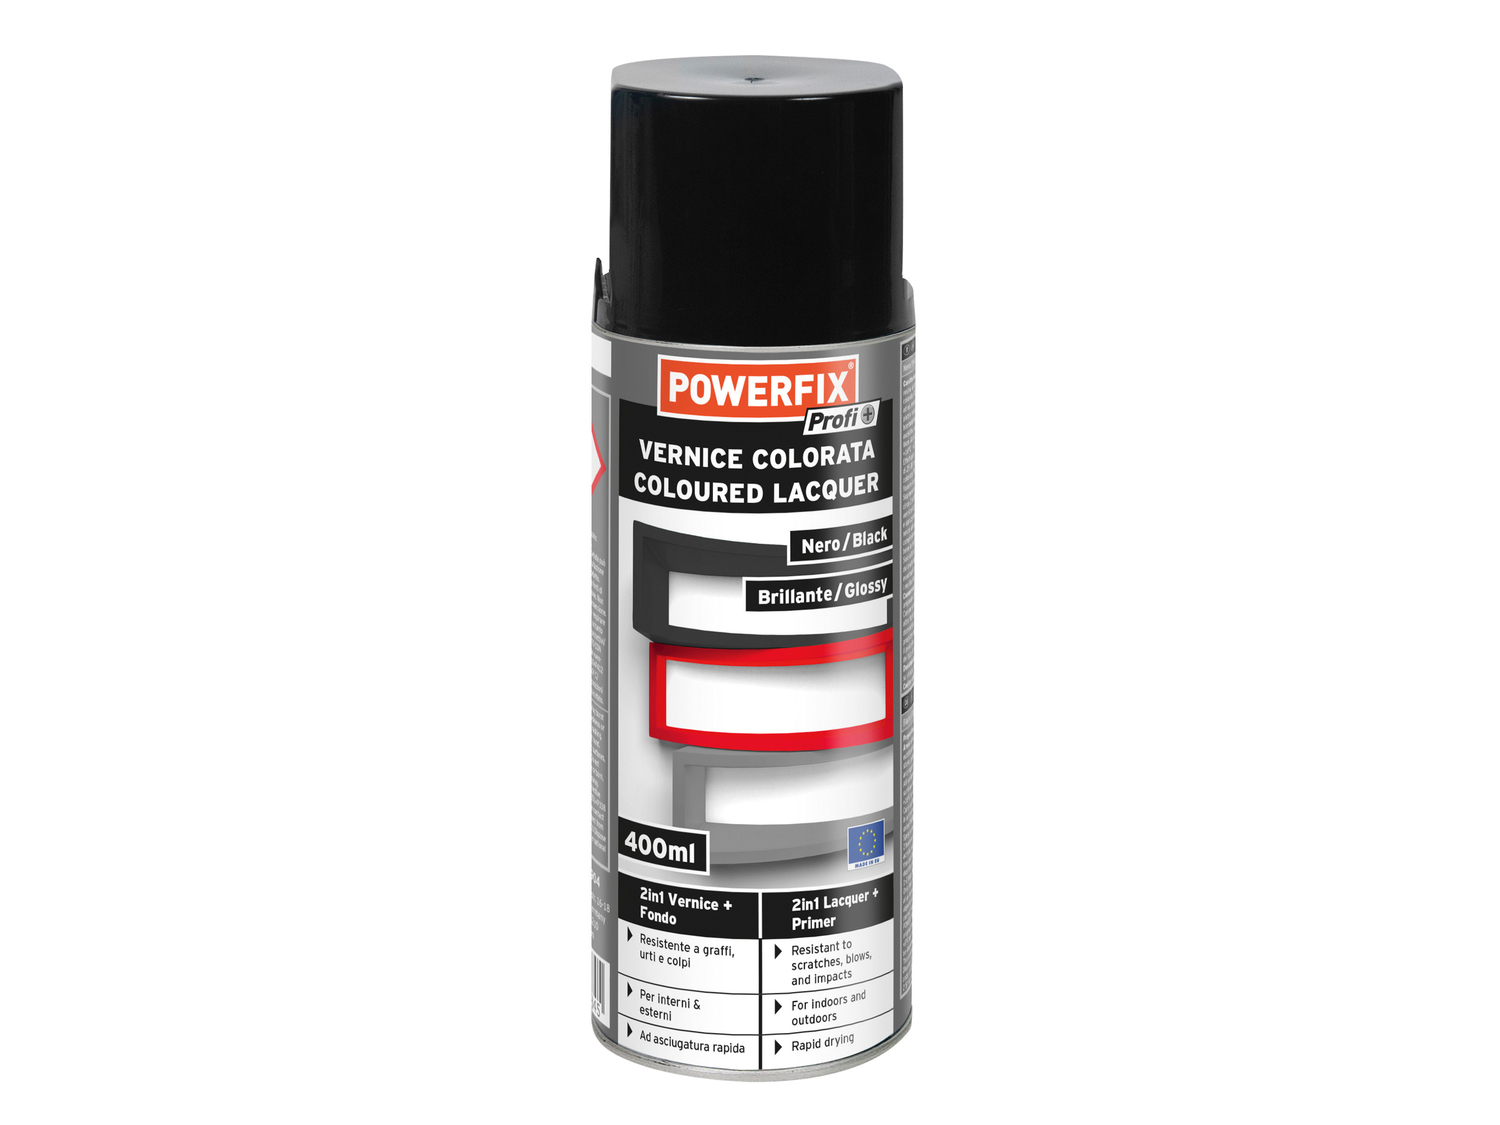 Vernice trasparente o colorata spray Powerfix, prezzo 2.99 €  
400 ml
Caratteristiche